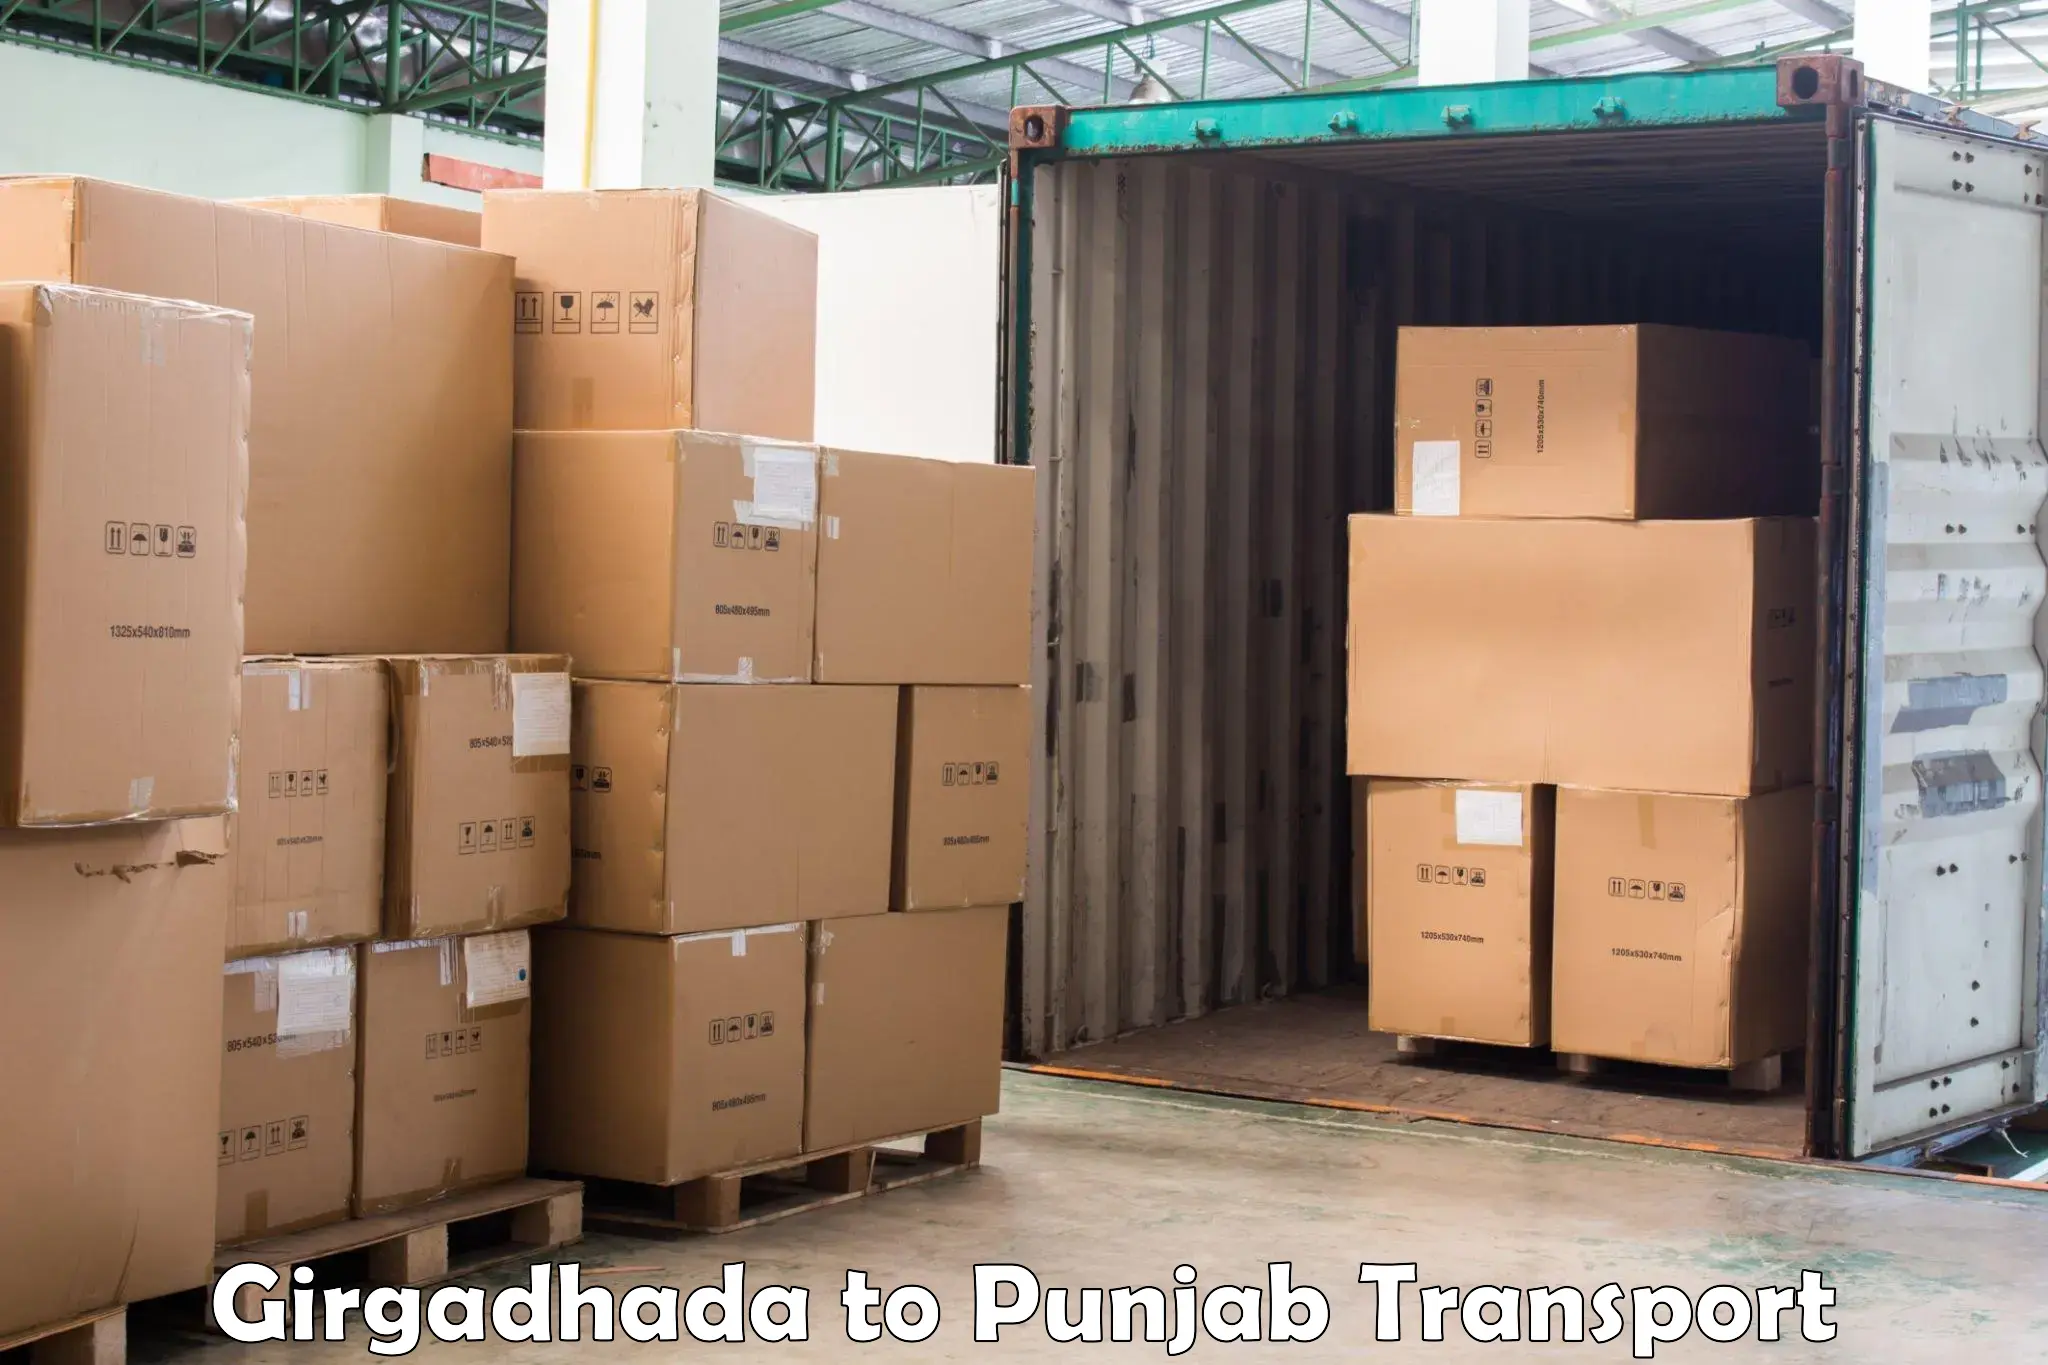 Daily transport service Girgadhada to Rampura Phul